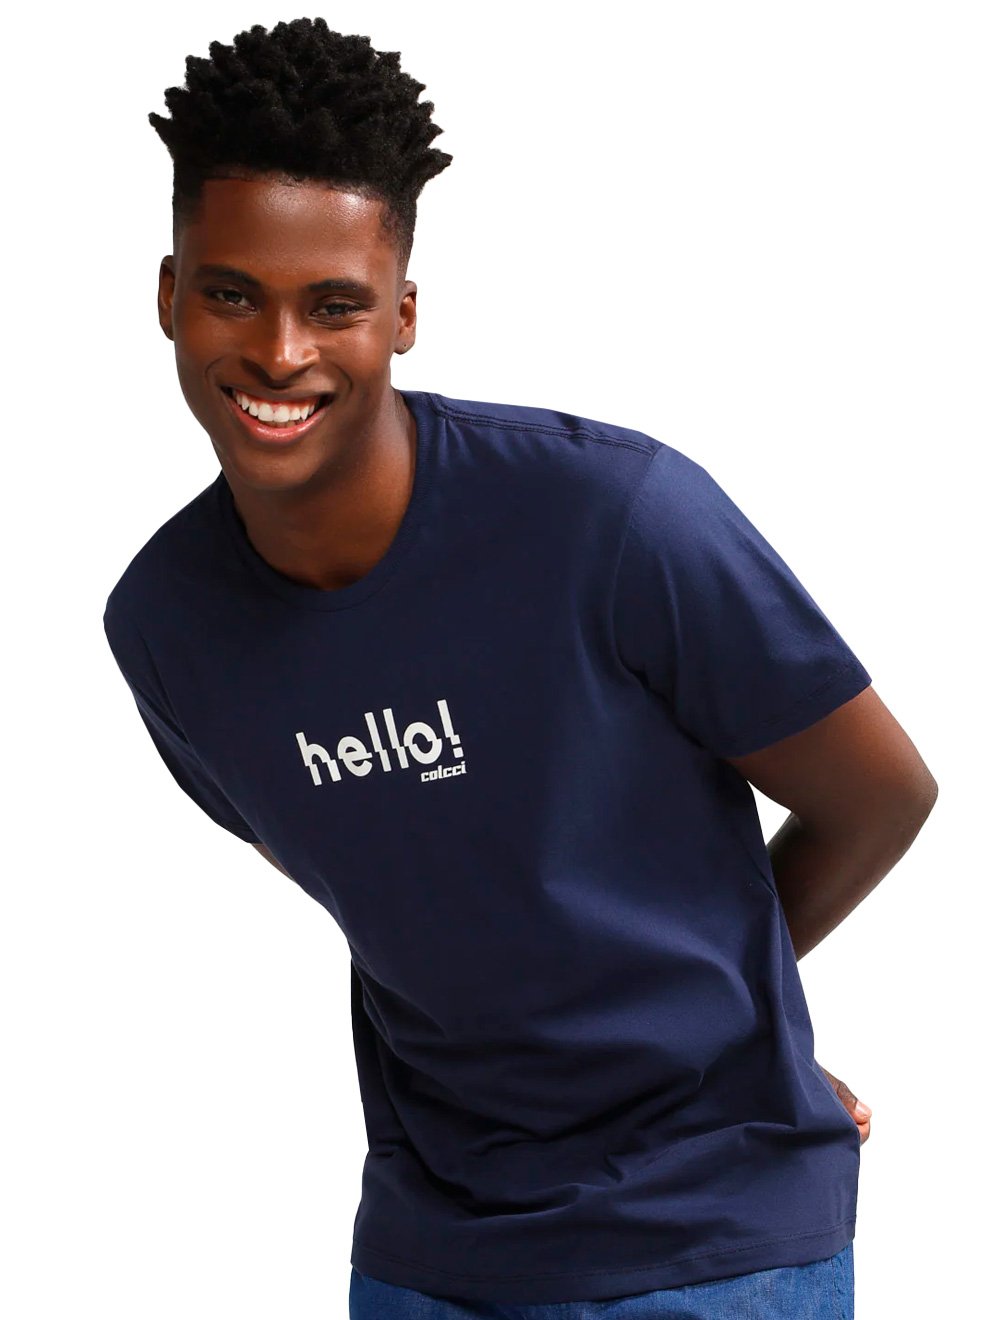 Camiseta Colcci Masculina Regular Hello! Azul Escuro